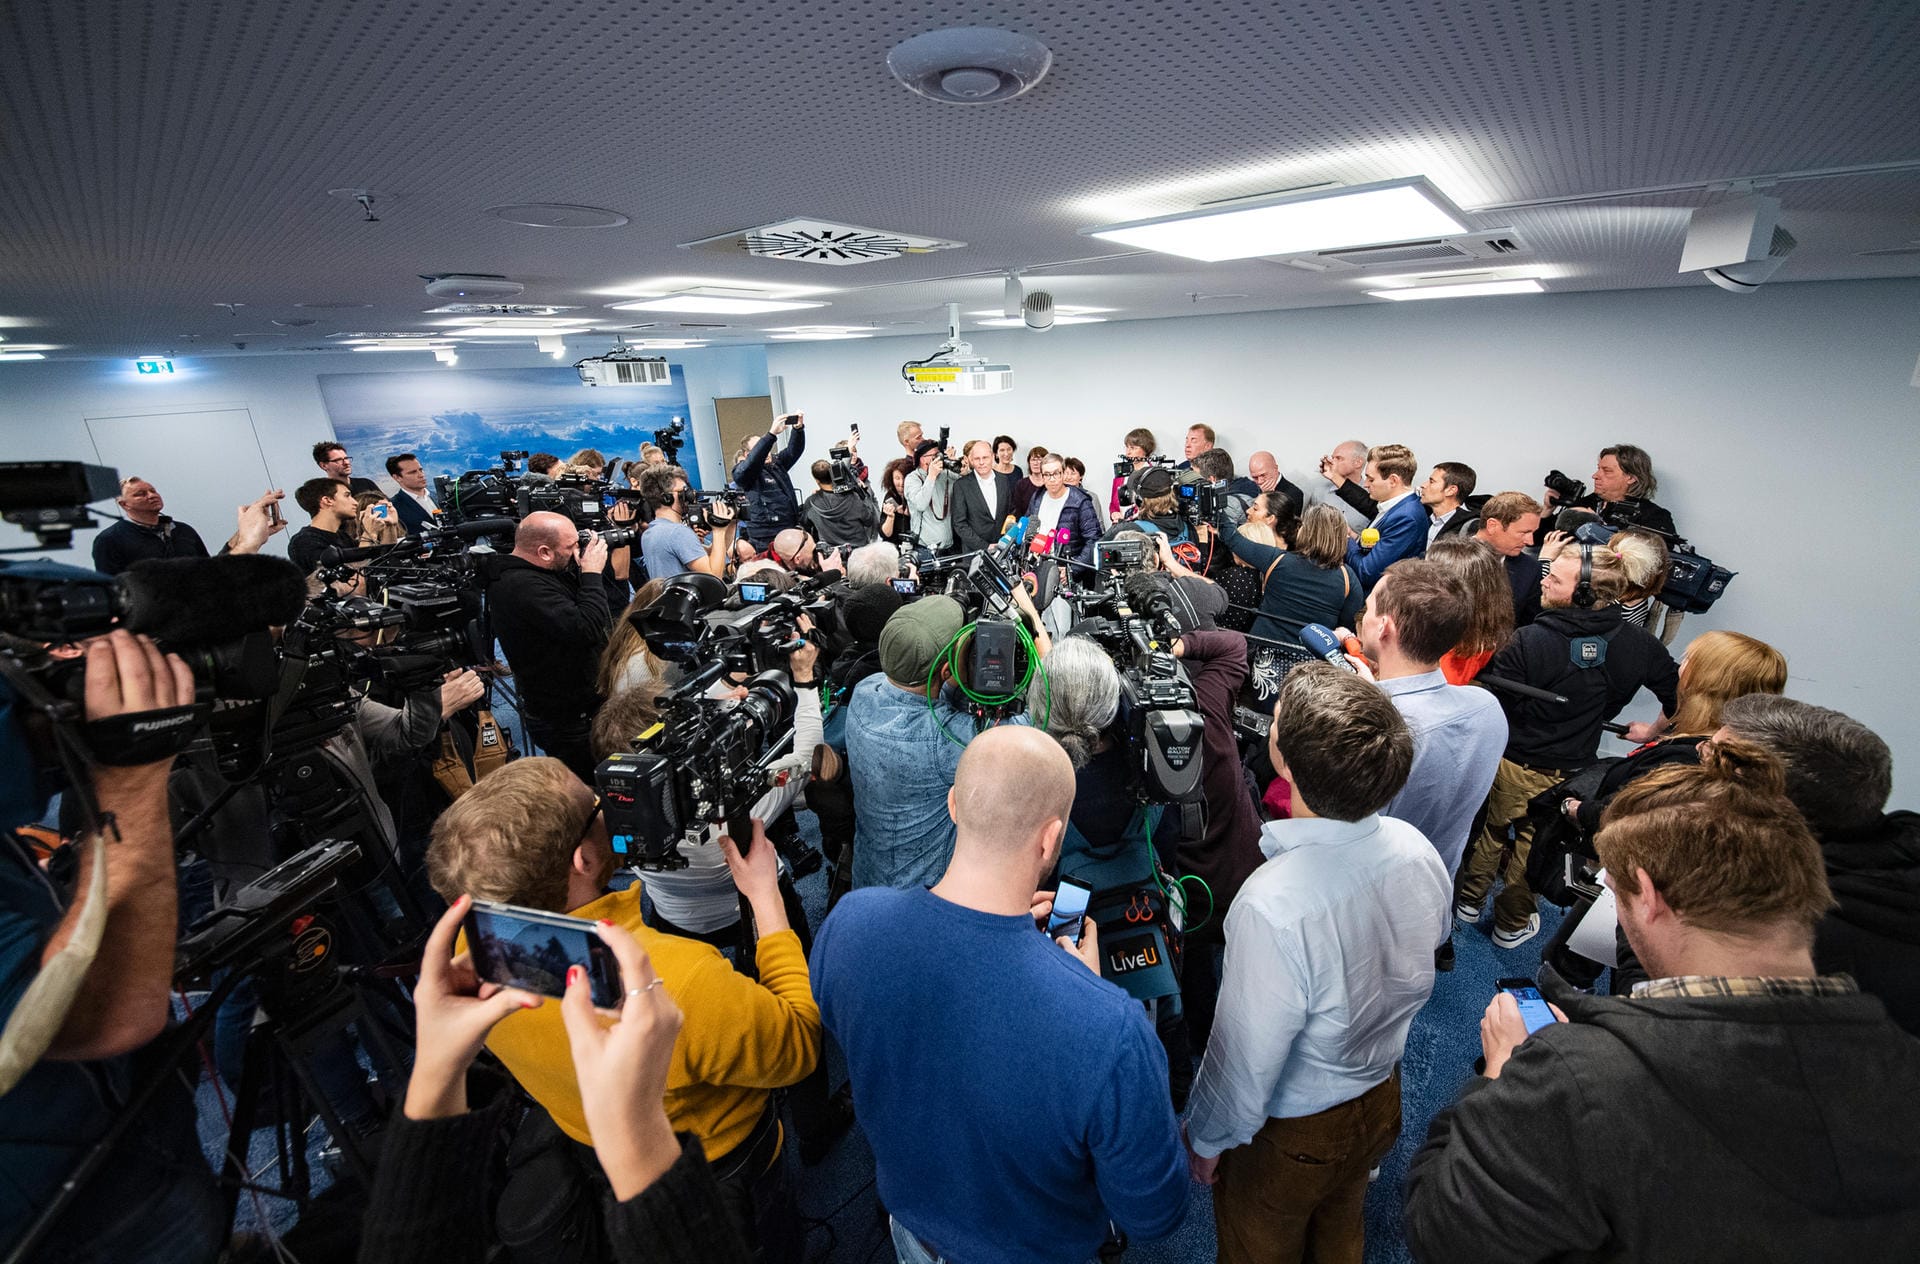 Nach seinem Empfang gab Söring noch am Flughafen ein kurzes Statement: Das Medieninteresse an dem Fall war groß.